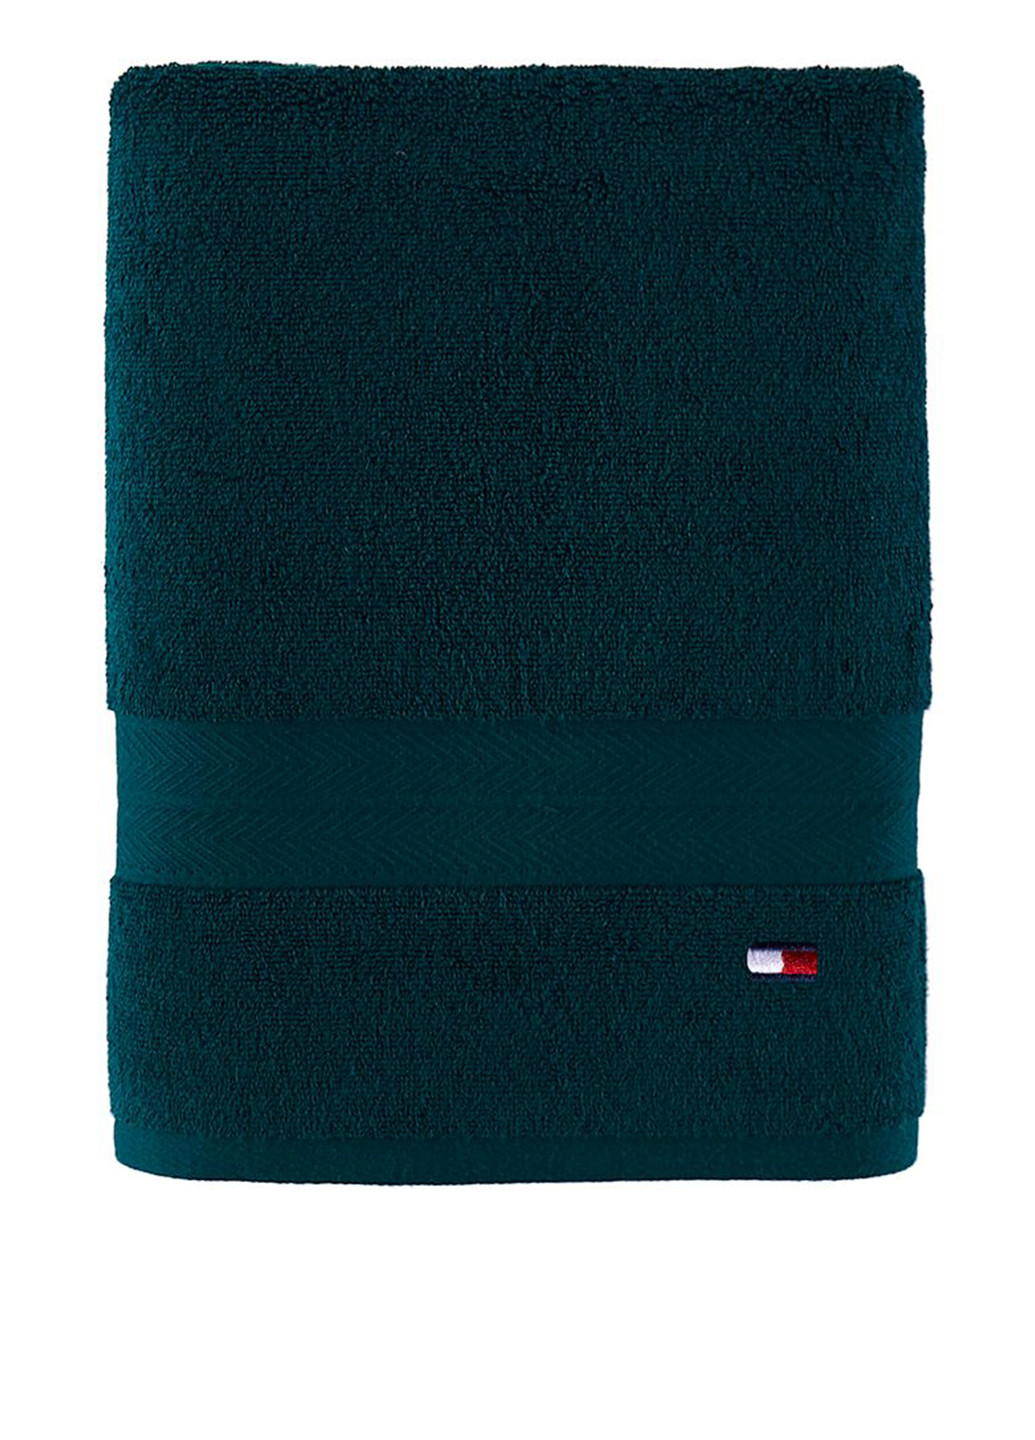 Tommy Hilfiger полотенце, 76х138 см однотонный зеленый производство - Индия